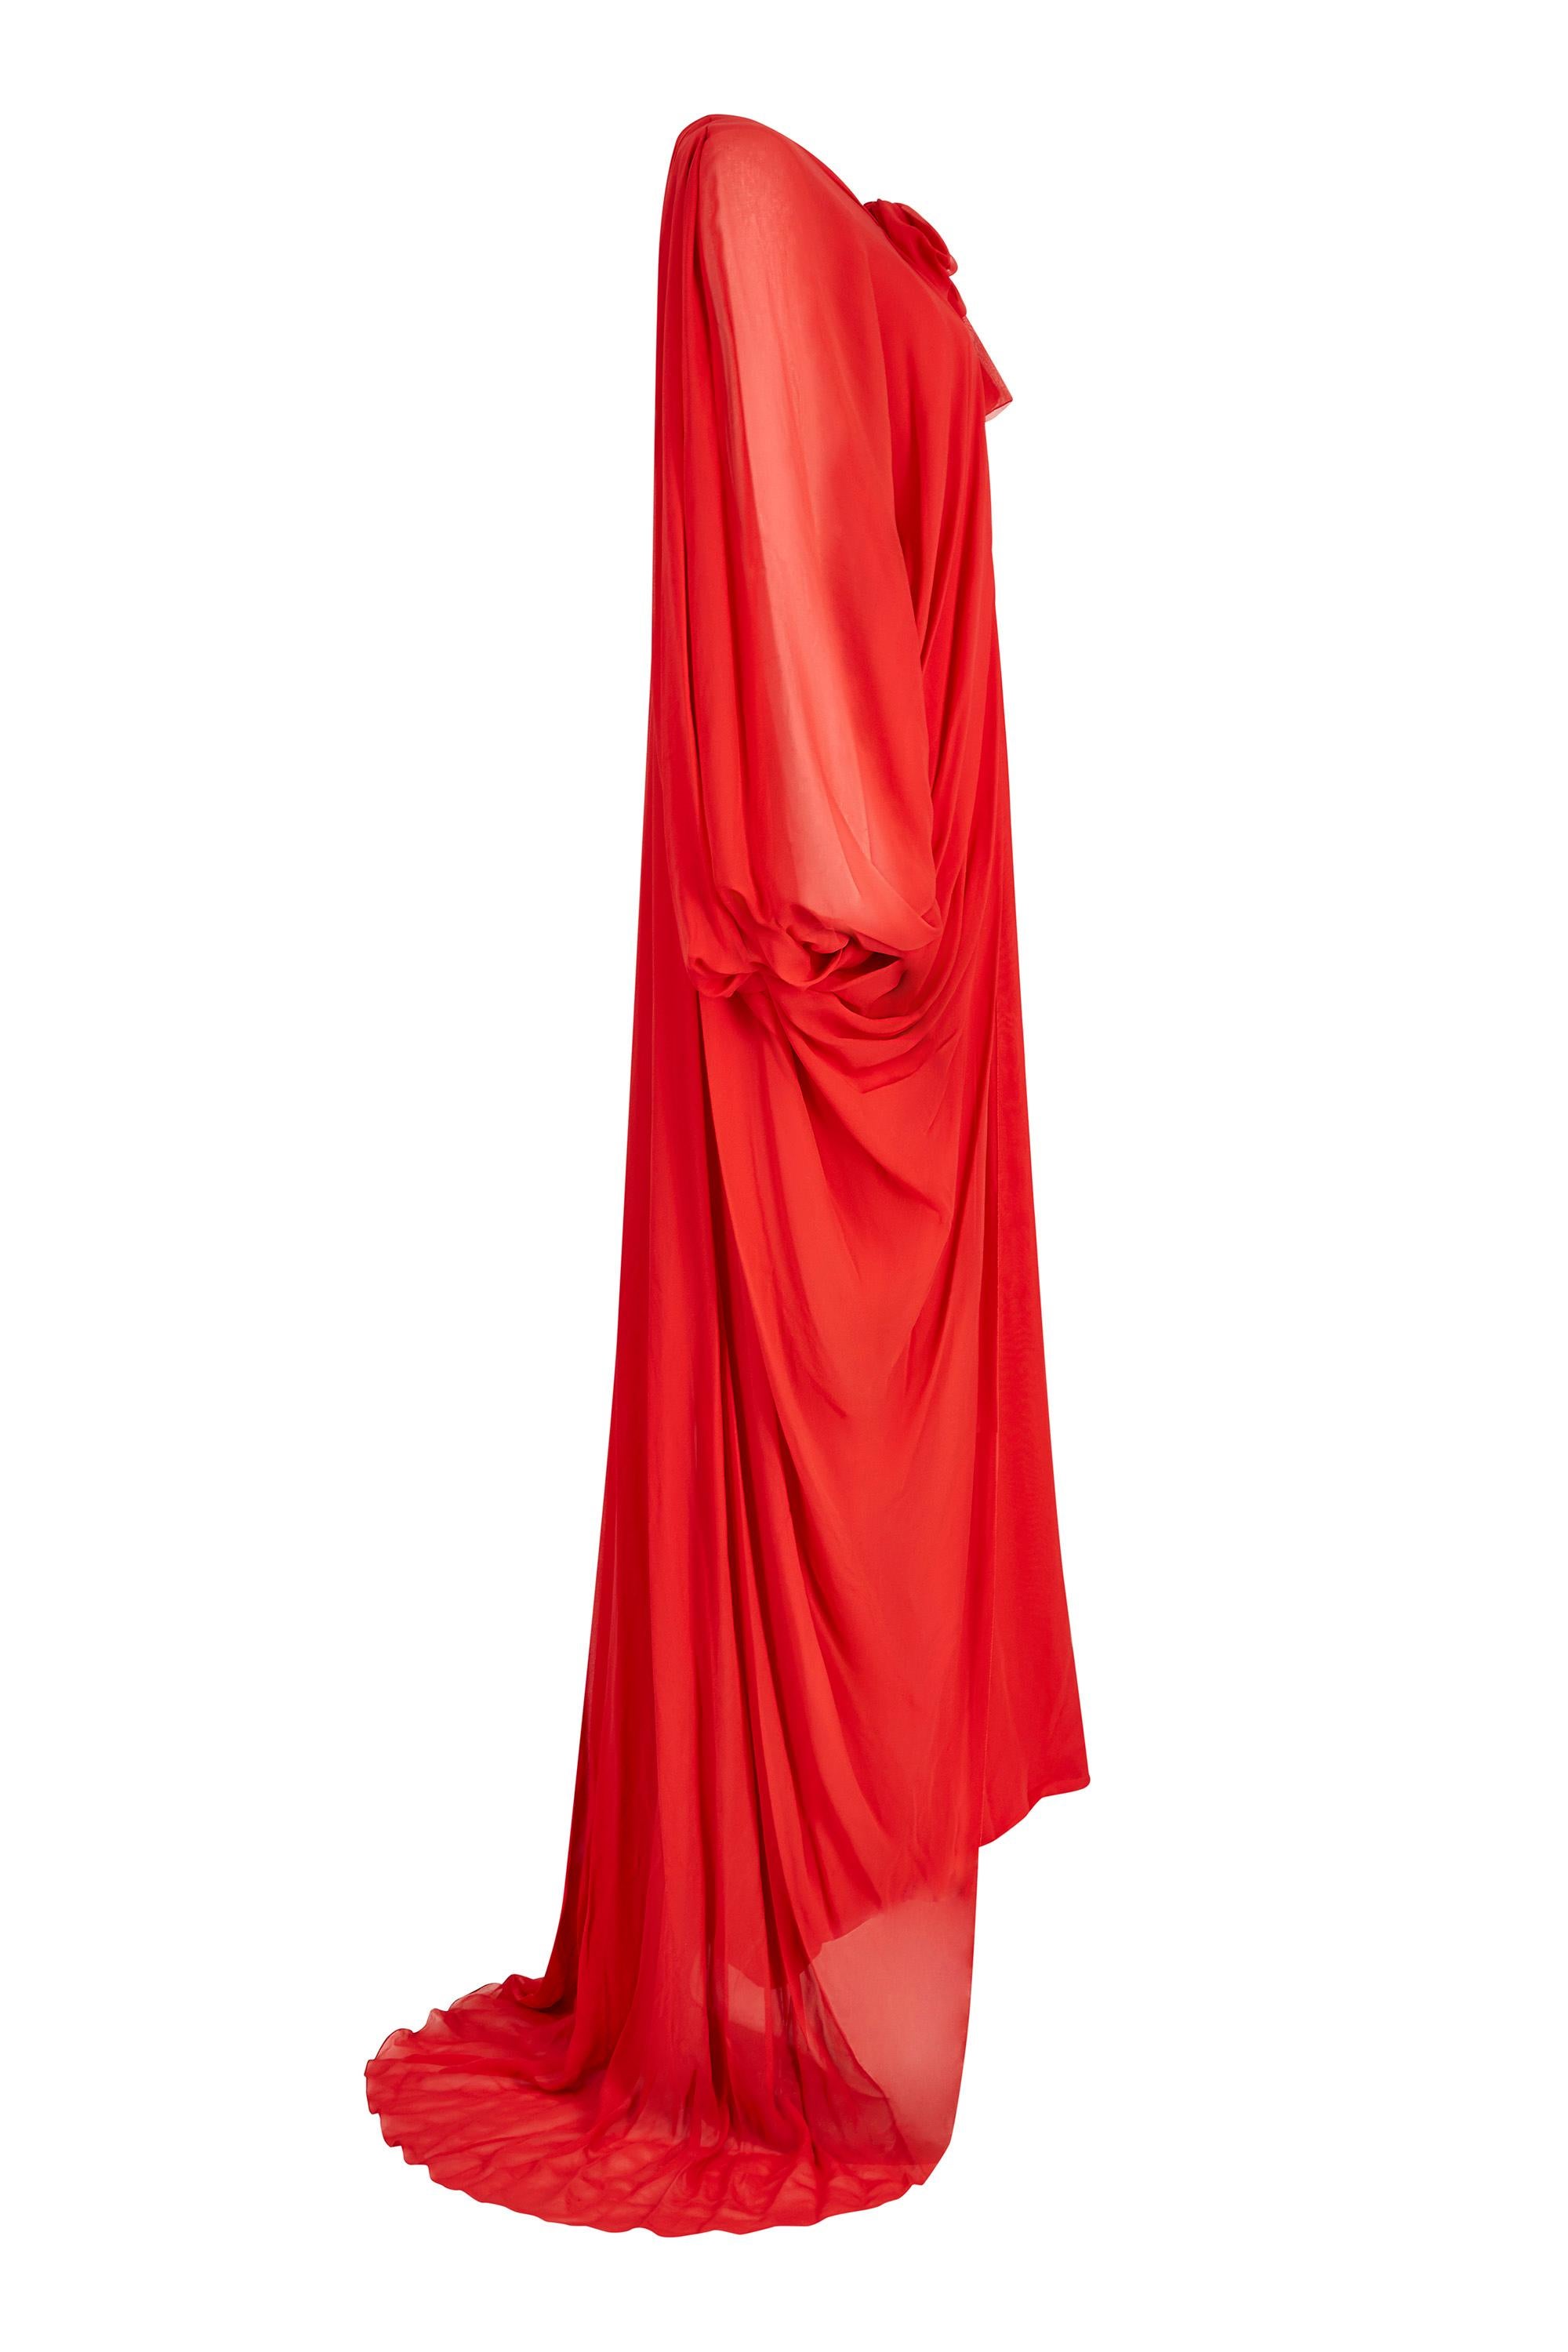 Dieses aufsehenerregende Demi-Couture-Abendkleid aus rotem Seidenchiffon der 1970er Jahre stammt von der Kultmarke Christian Dior, als der berühmte Designer Marc Bohan am Ruder war. Dieses aufsehenerregende Stück besteht aus einem mit Seide